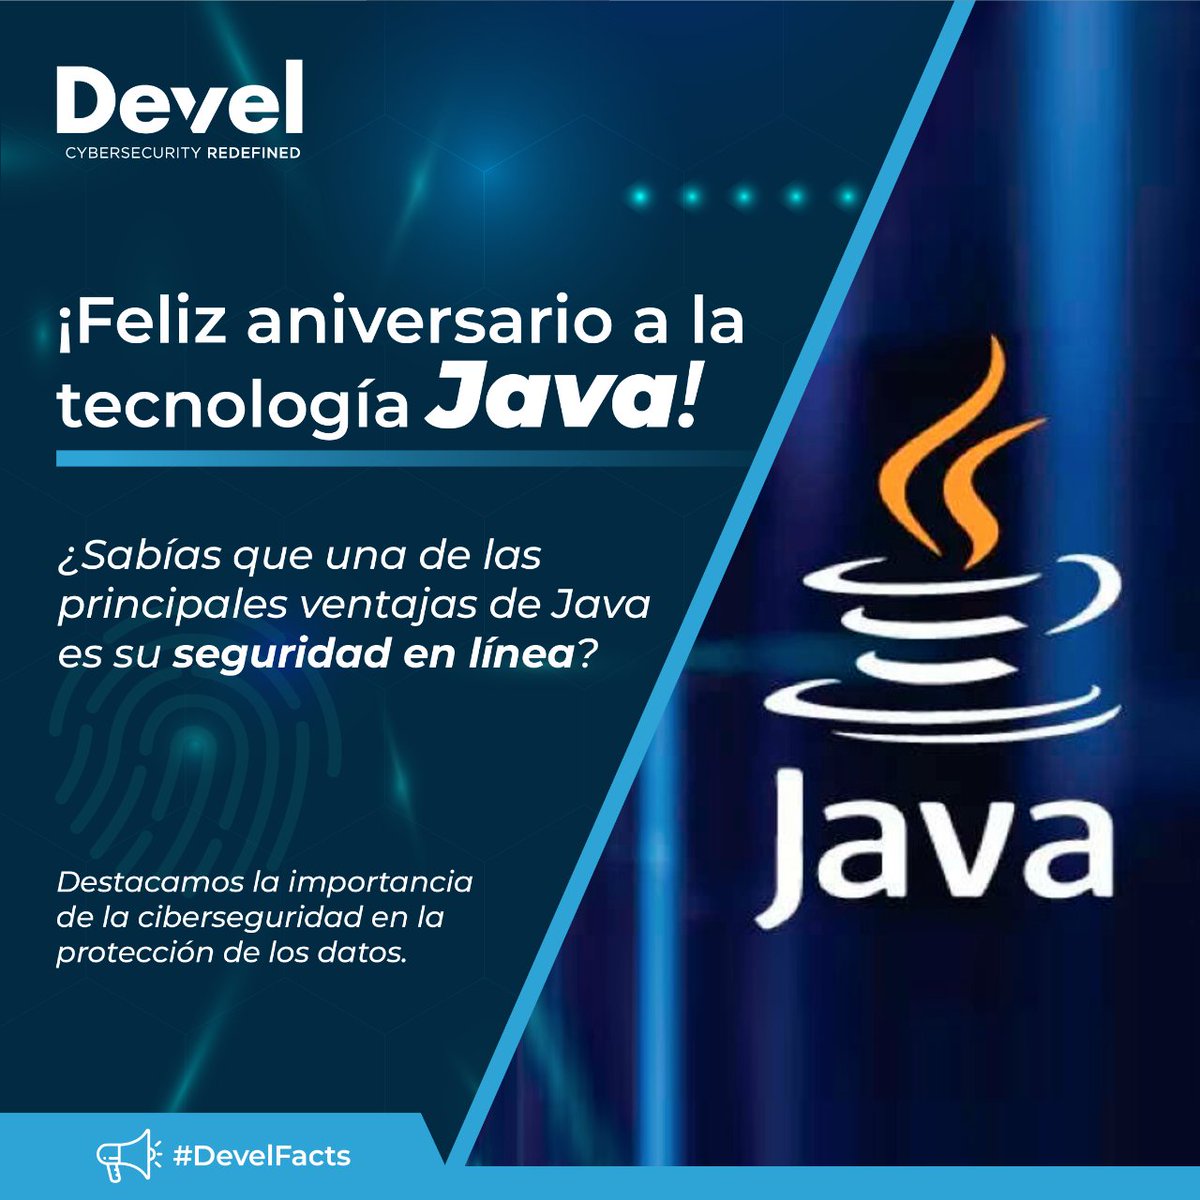 🎂👨💻 ¡Feliz aniversario a la tecnología Java! 🚀

Hoy estamos celebrando el aniversario de Java al mismo tiempo que destacamos la importancia de la ciberseguridad en la protección de los datos.

#Ciberseguridad #DevelGroup #DevelFacts